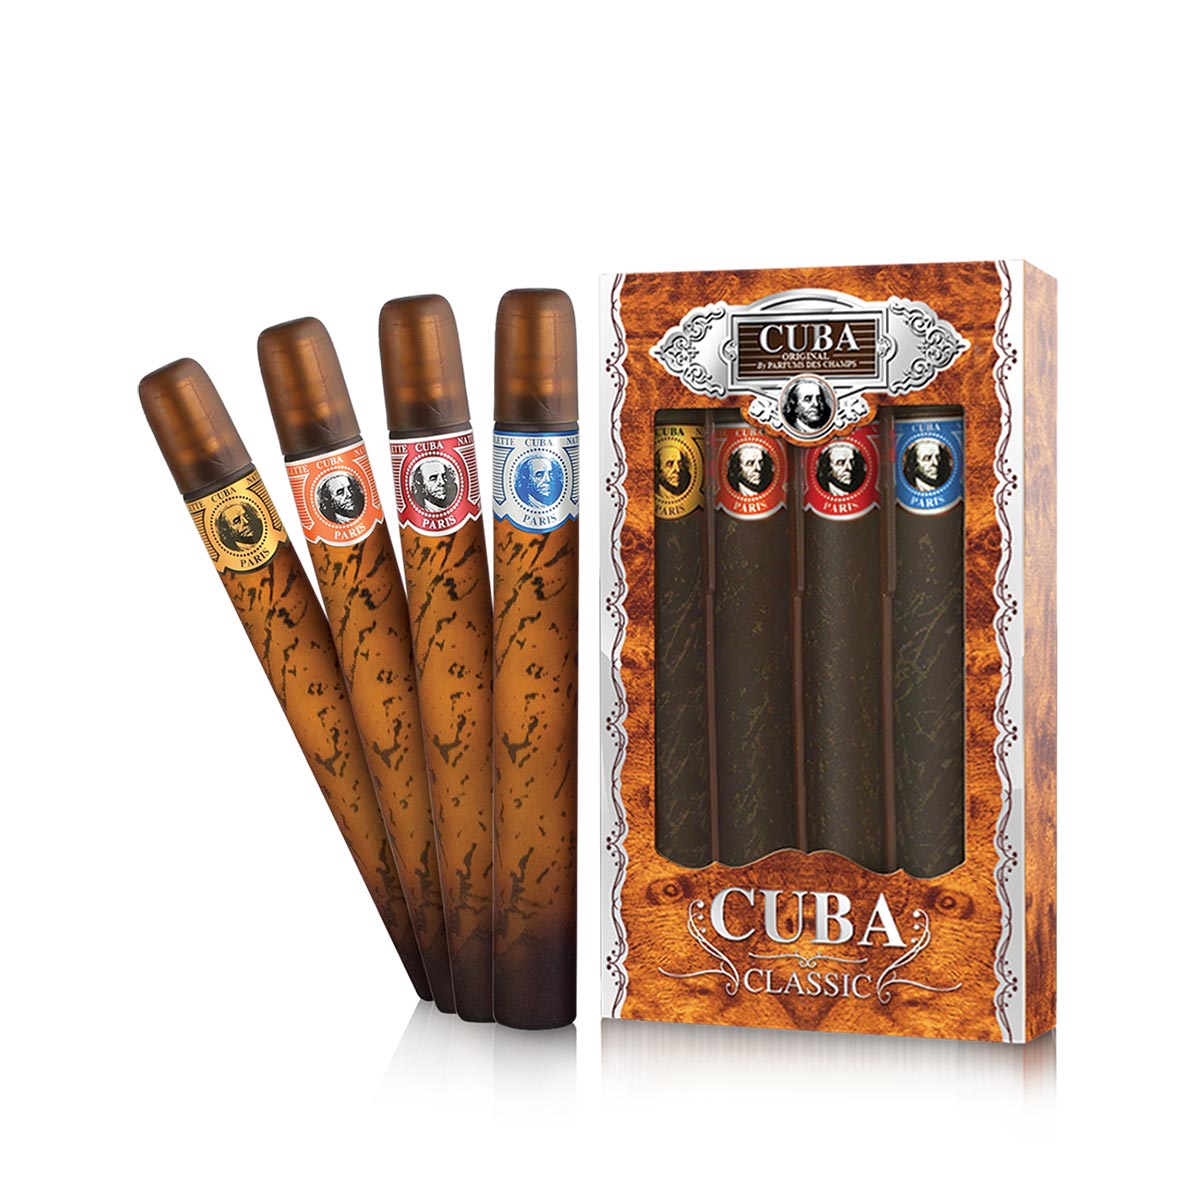 Cuba 4 Cigars Classic Gift Set